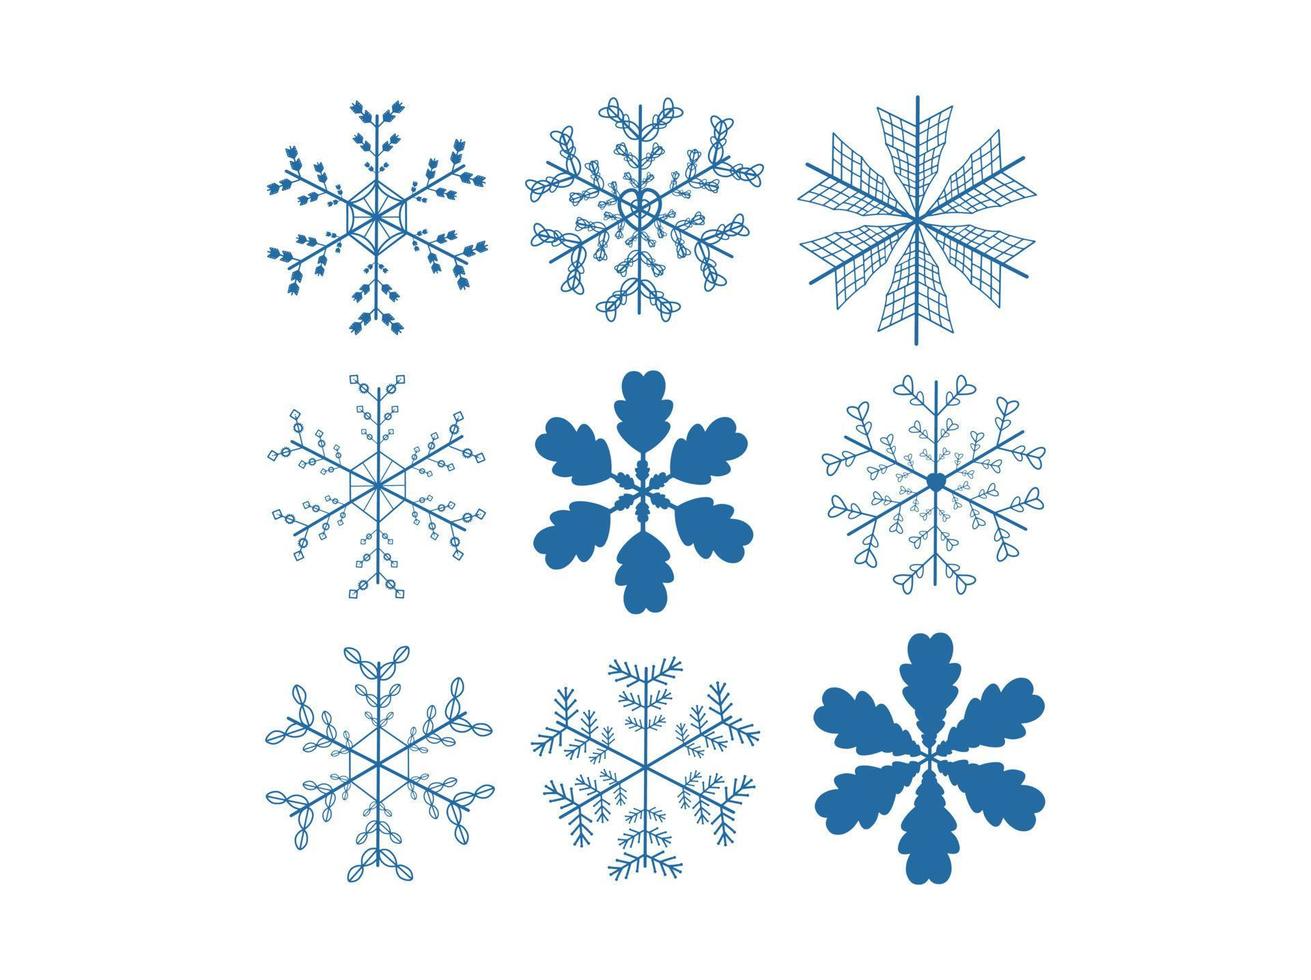 reeks van Kerstmis sneeuwvlokken van verschillend patronen. vector illustratie in hand- getrokken stijl